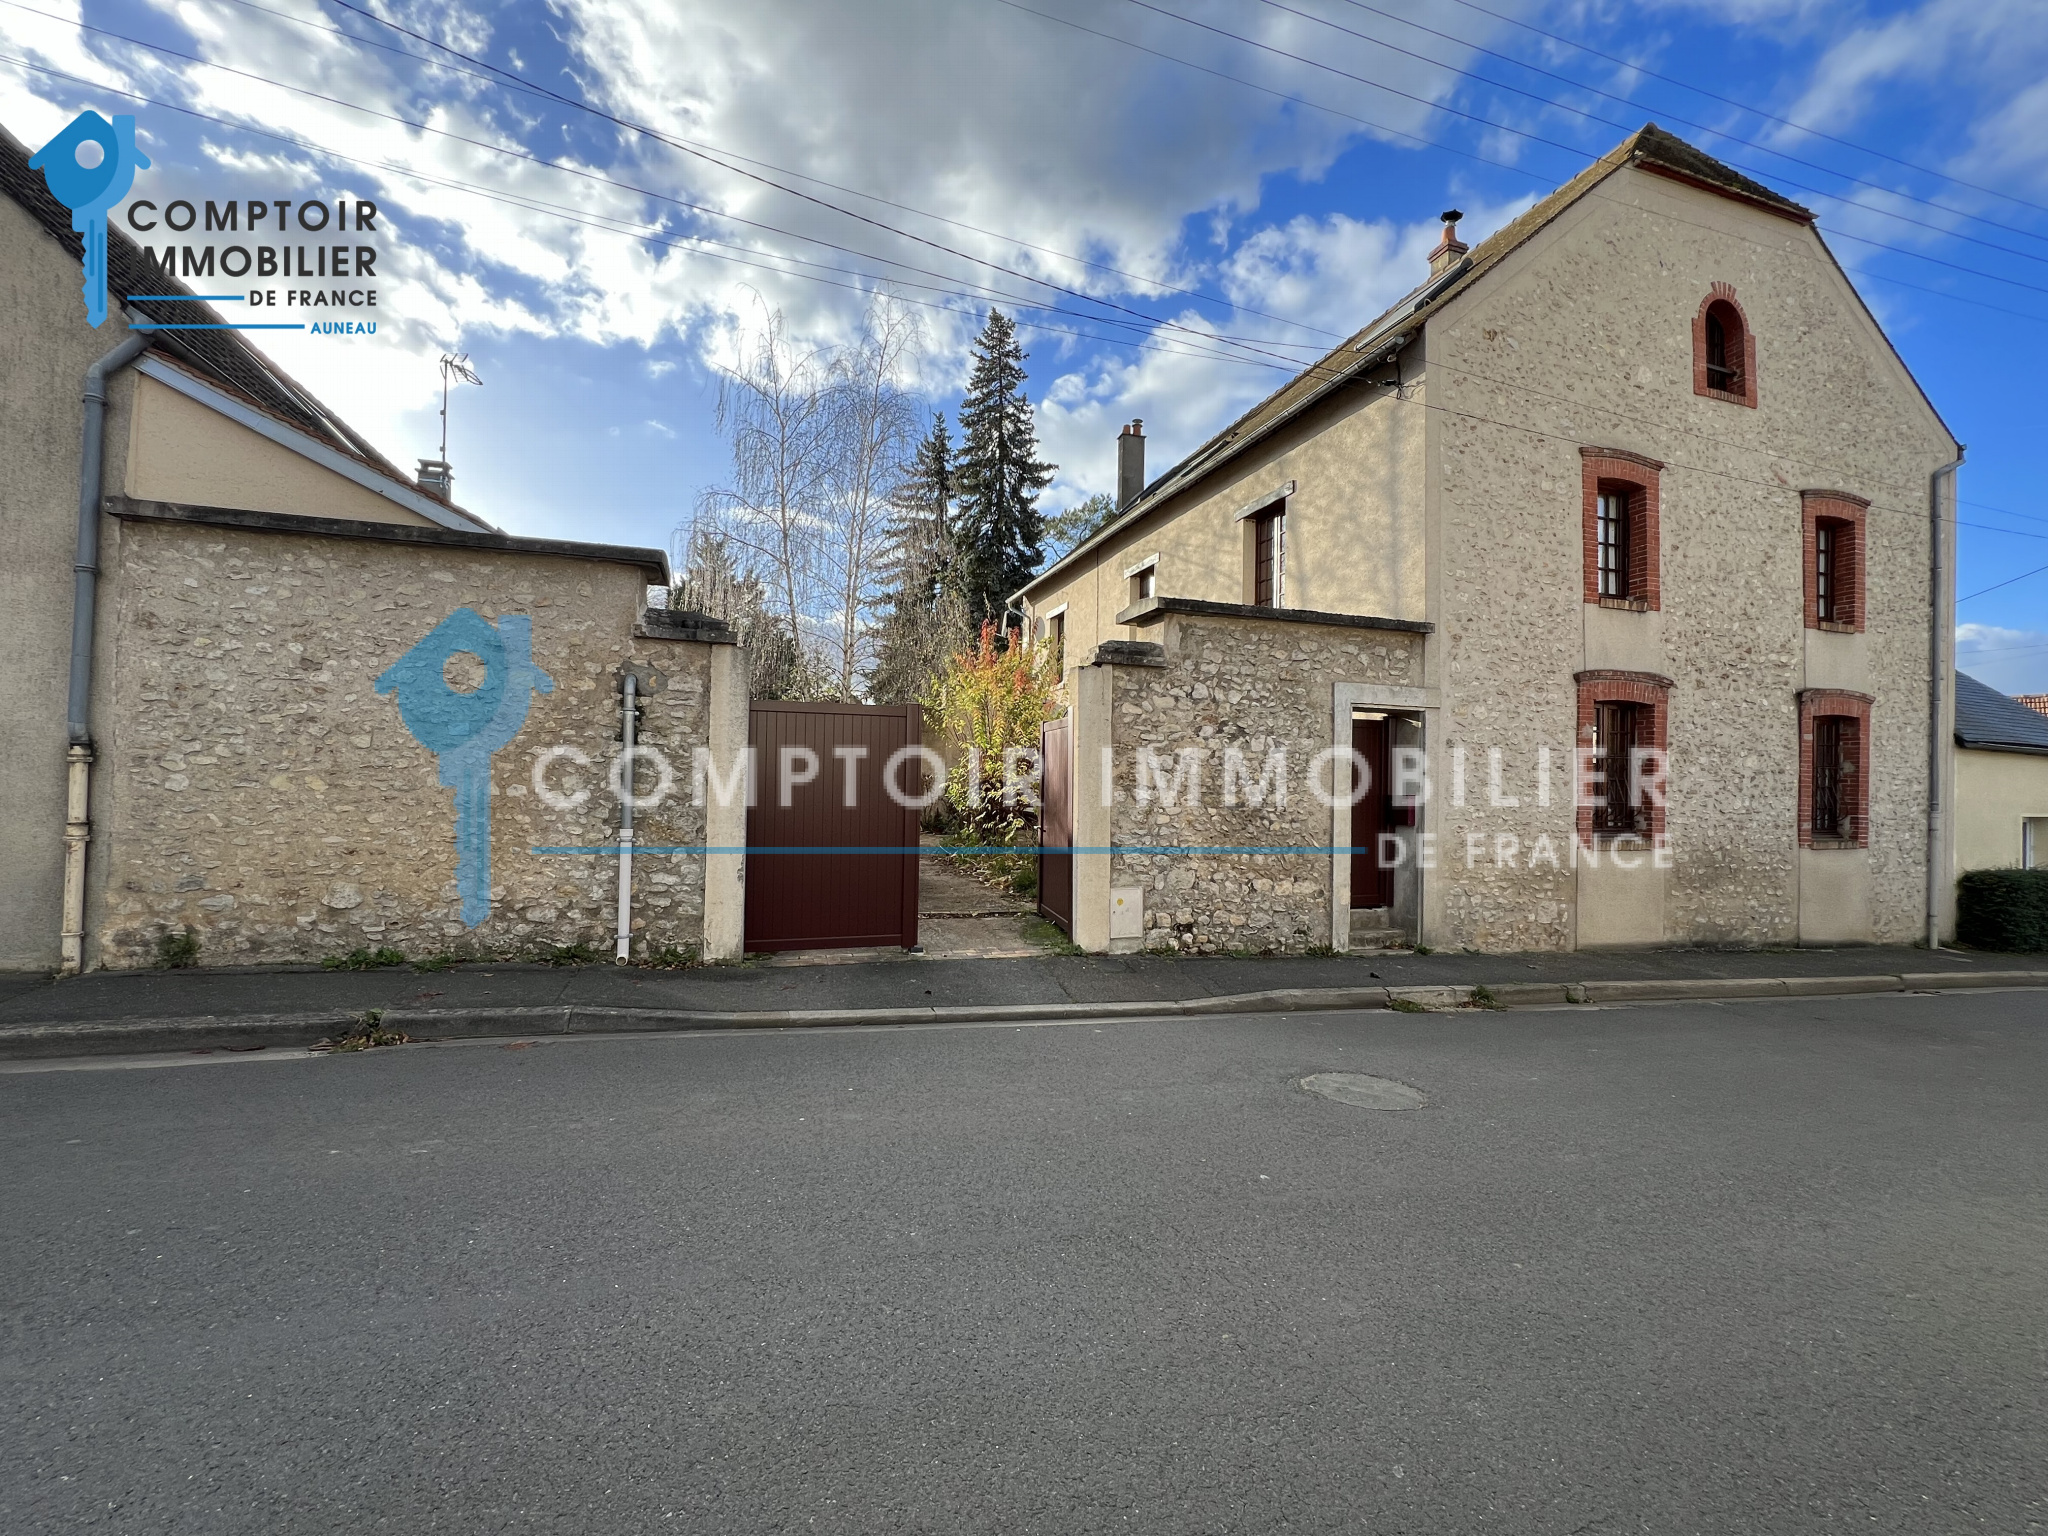 Vente Maison 204m² 9 Pièces à Aunay-sous-Auneau (28700) - Comptoir Immobilier De France